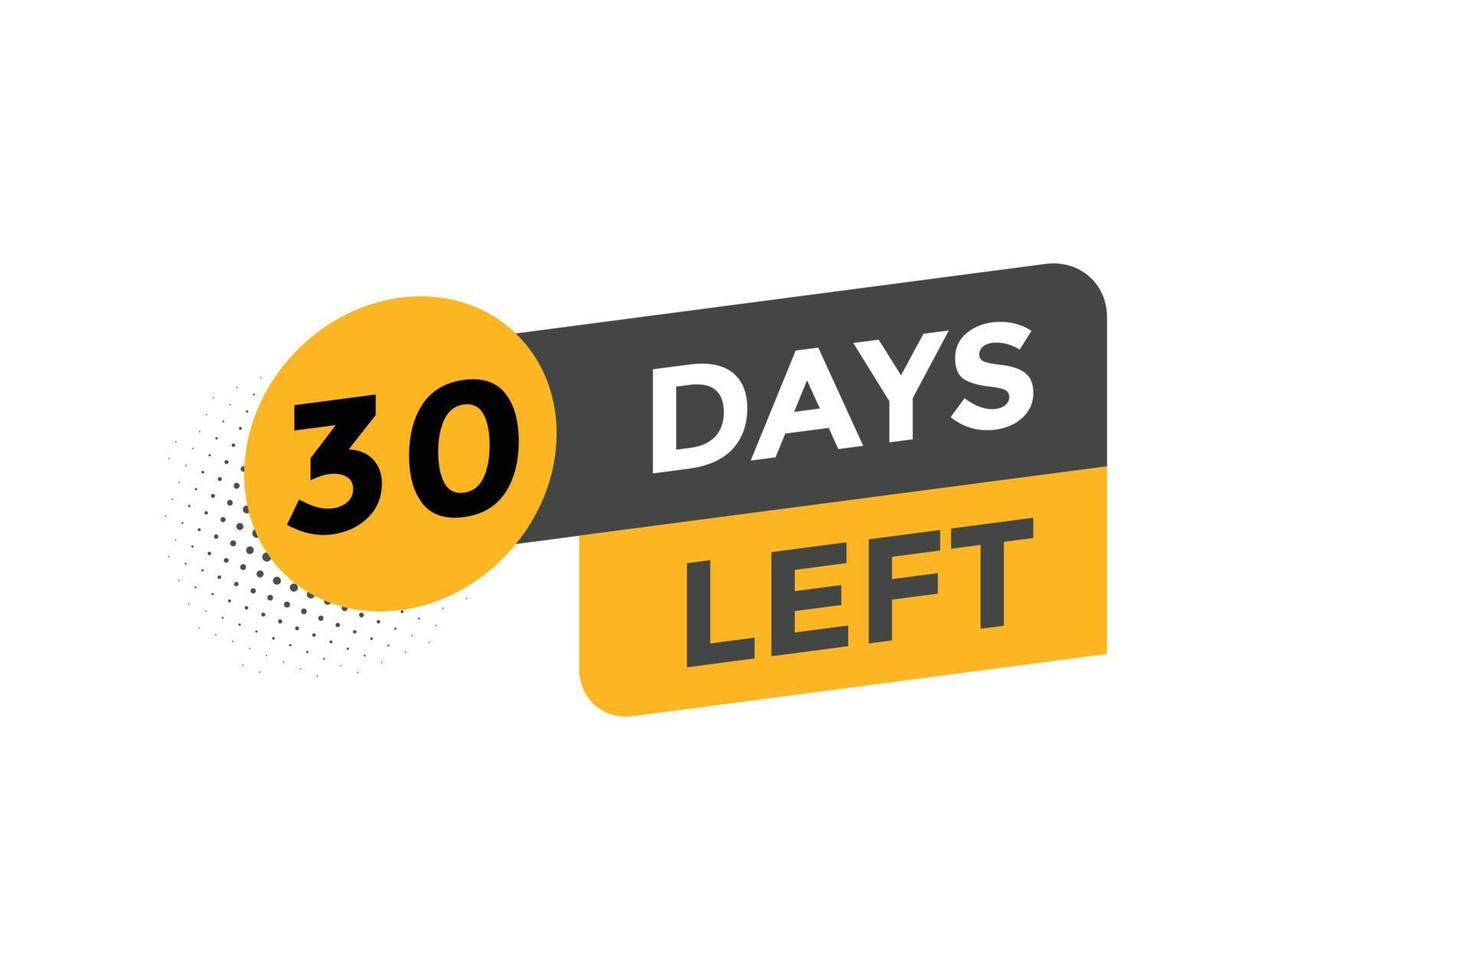 30 Tage links Countdown Vorlage. 30 Tag Countdown links Banner Etikette Taste eps 10 vektor